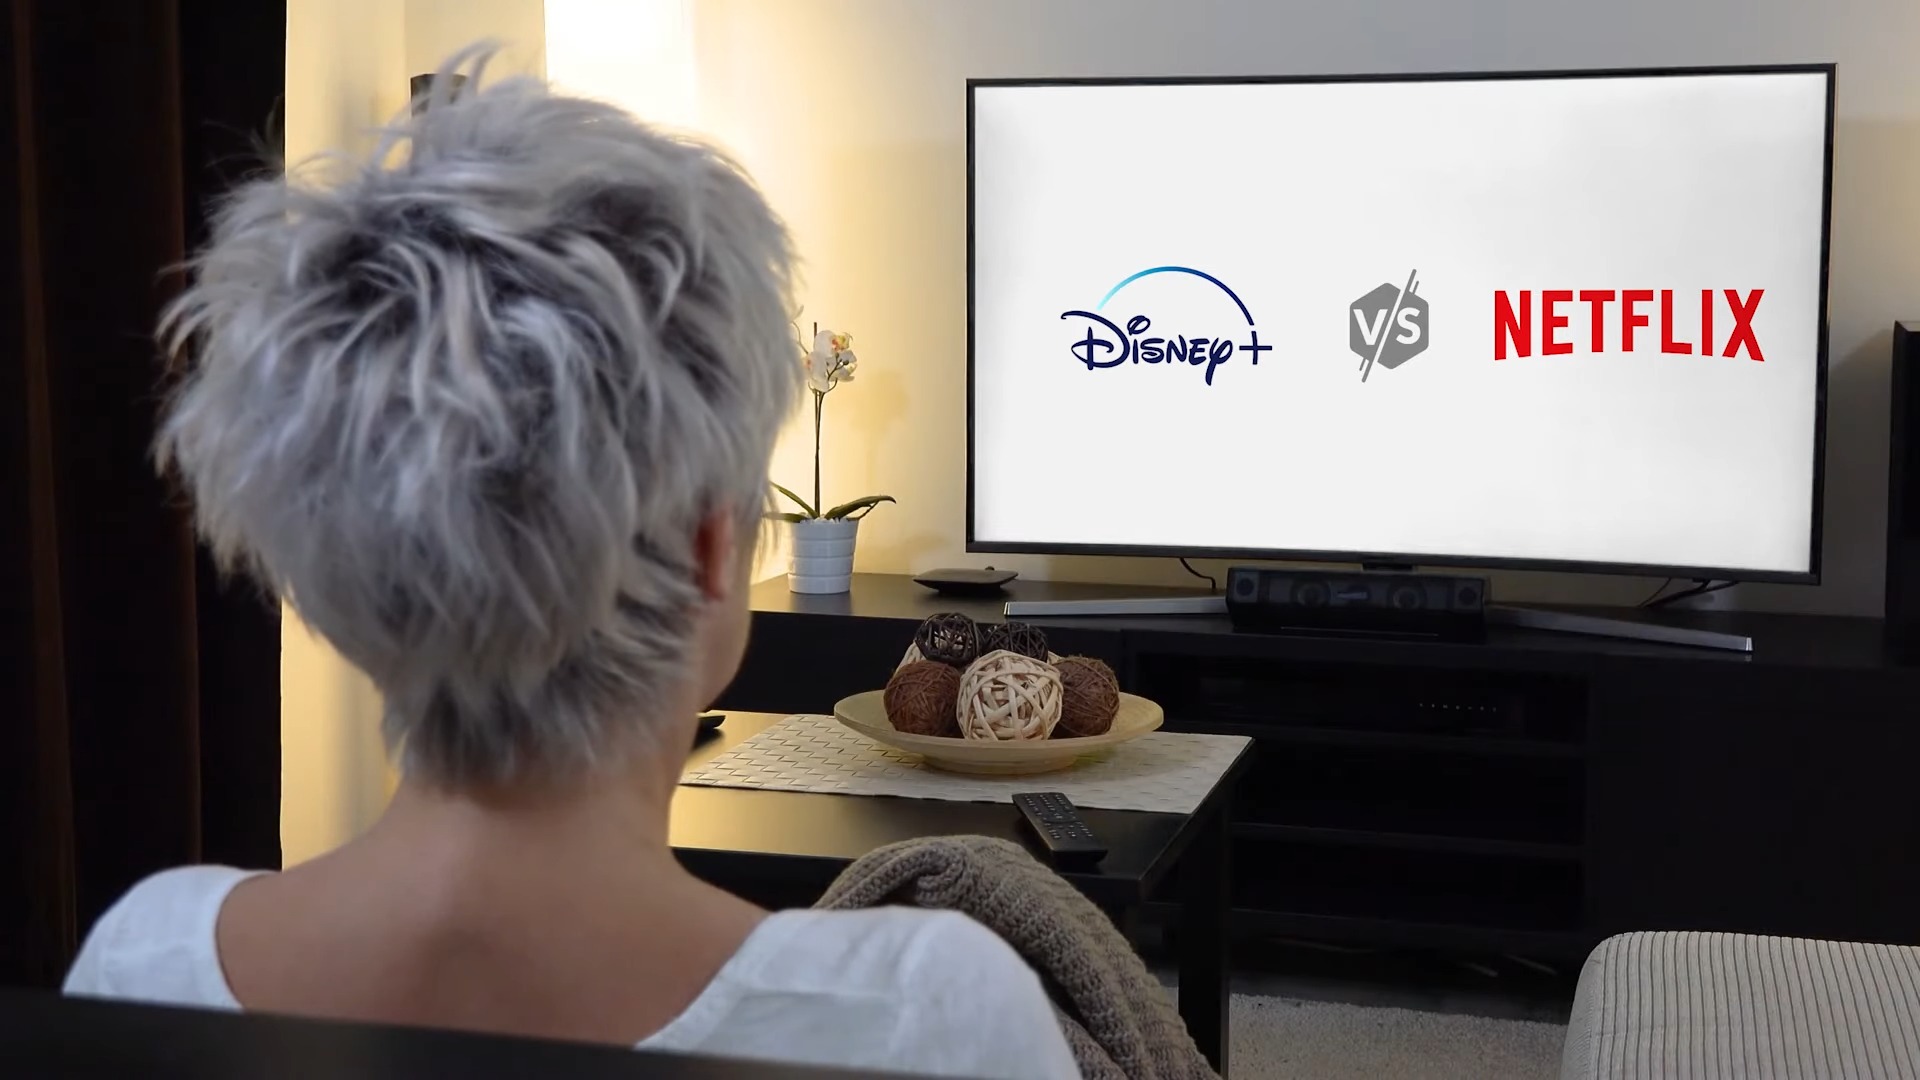 Netflix Vs Disney Plus verglichen: Welcher ist besser?